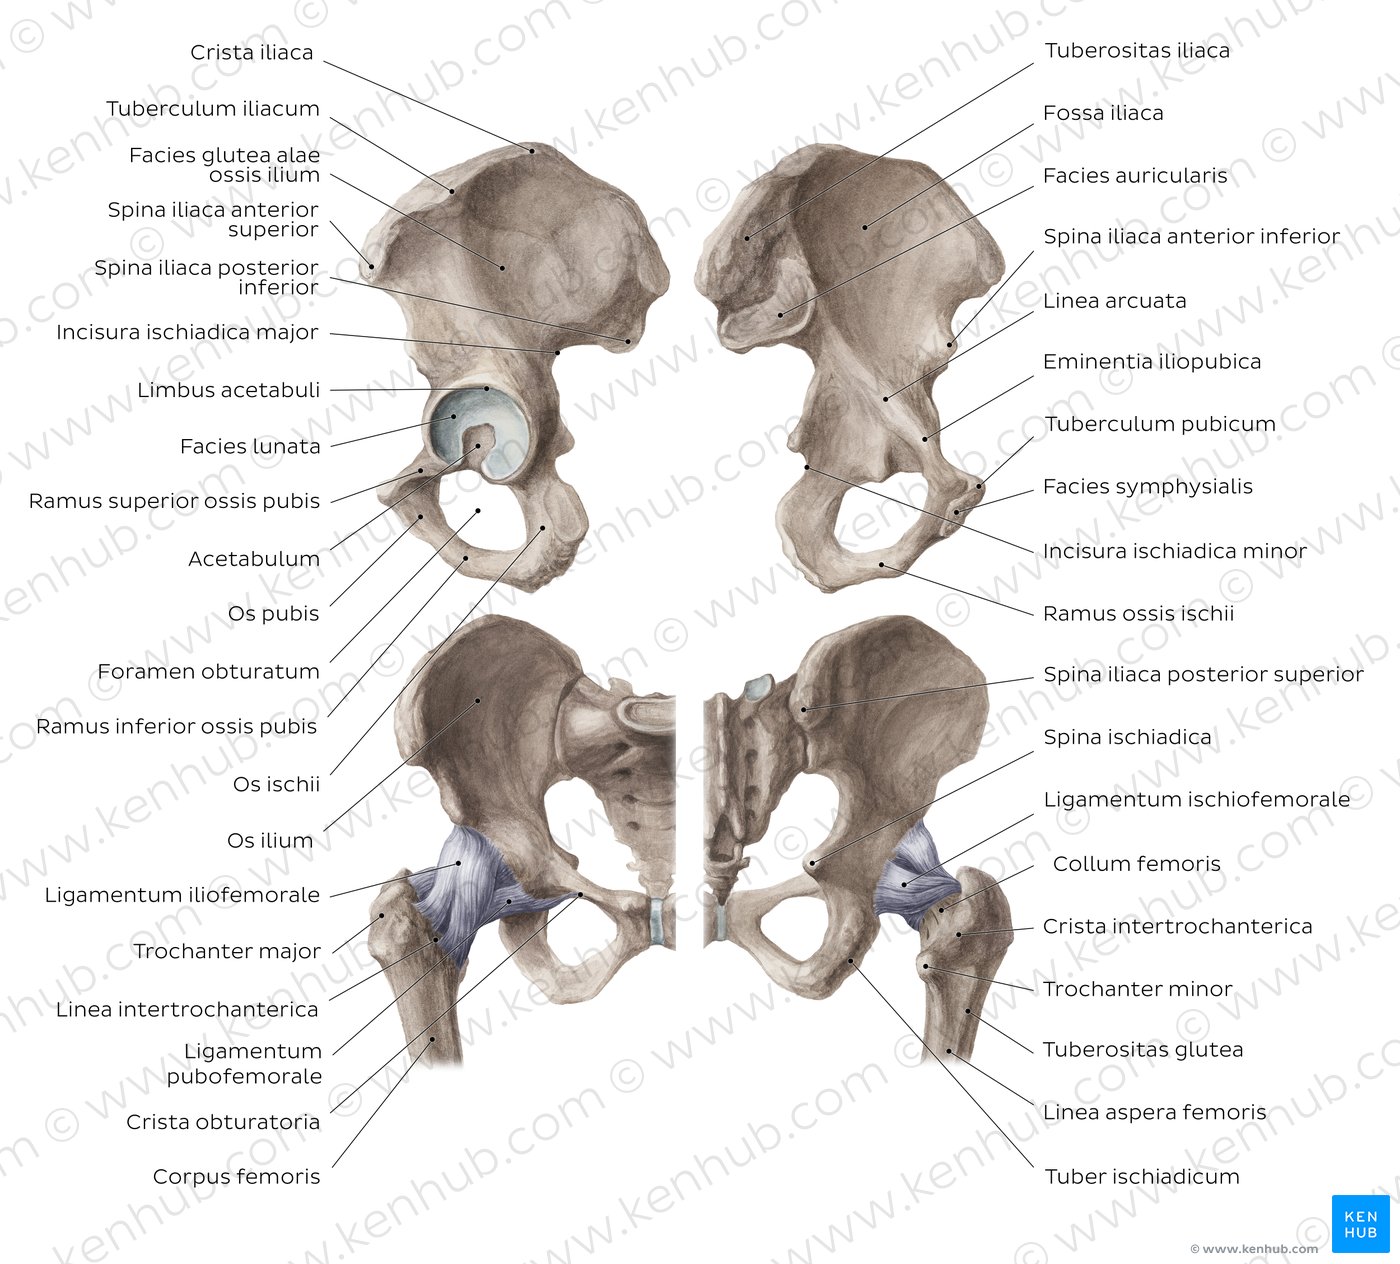 Anatomie Hüfte und Oberschenkel - Knochen und Muskeln | Kenhub